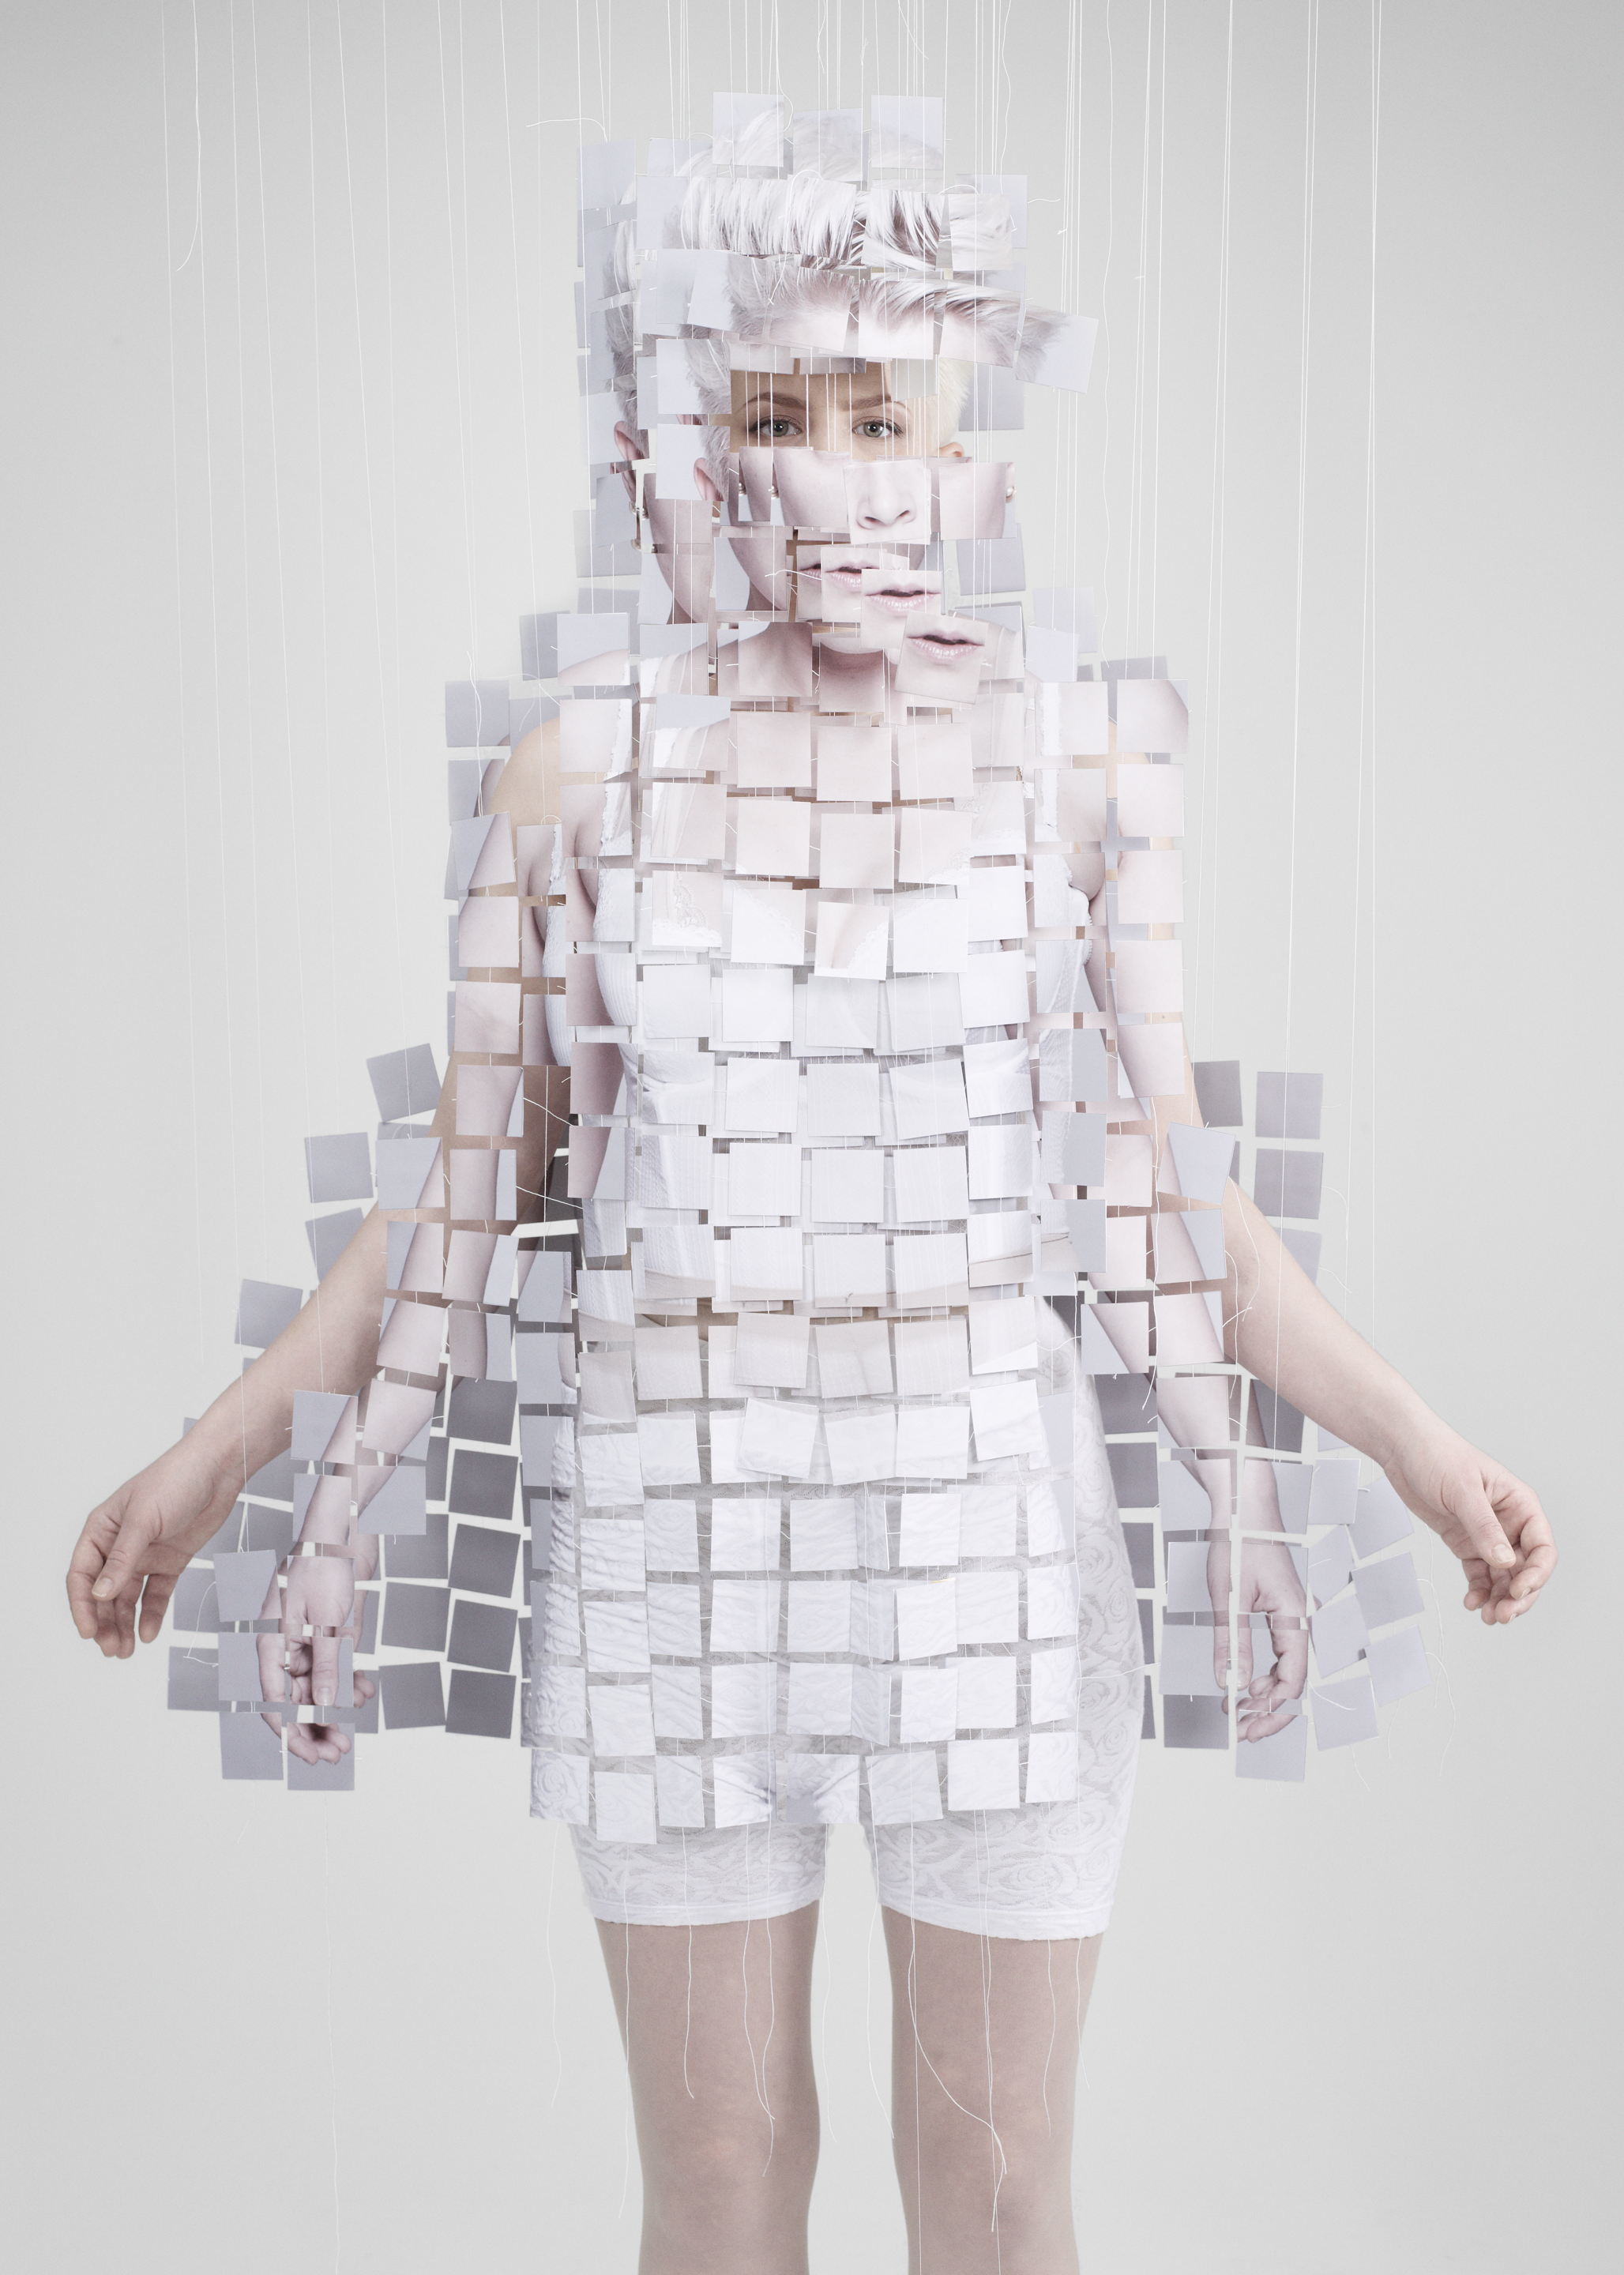 Auf dem Foto ist ein Model in einem Kleid zu sehen, das an ein Puzzle erinnert. Label: Alice Auaa. Designer: Yasutaka Funakoshi. Foto: Hiroyuki Kamo Buch: Otherworldly. © Gestalten 2016